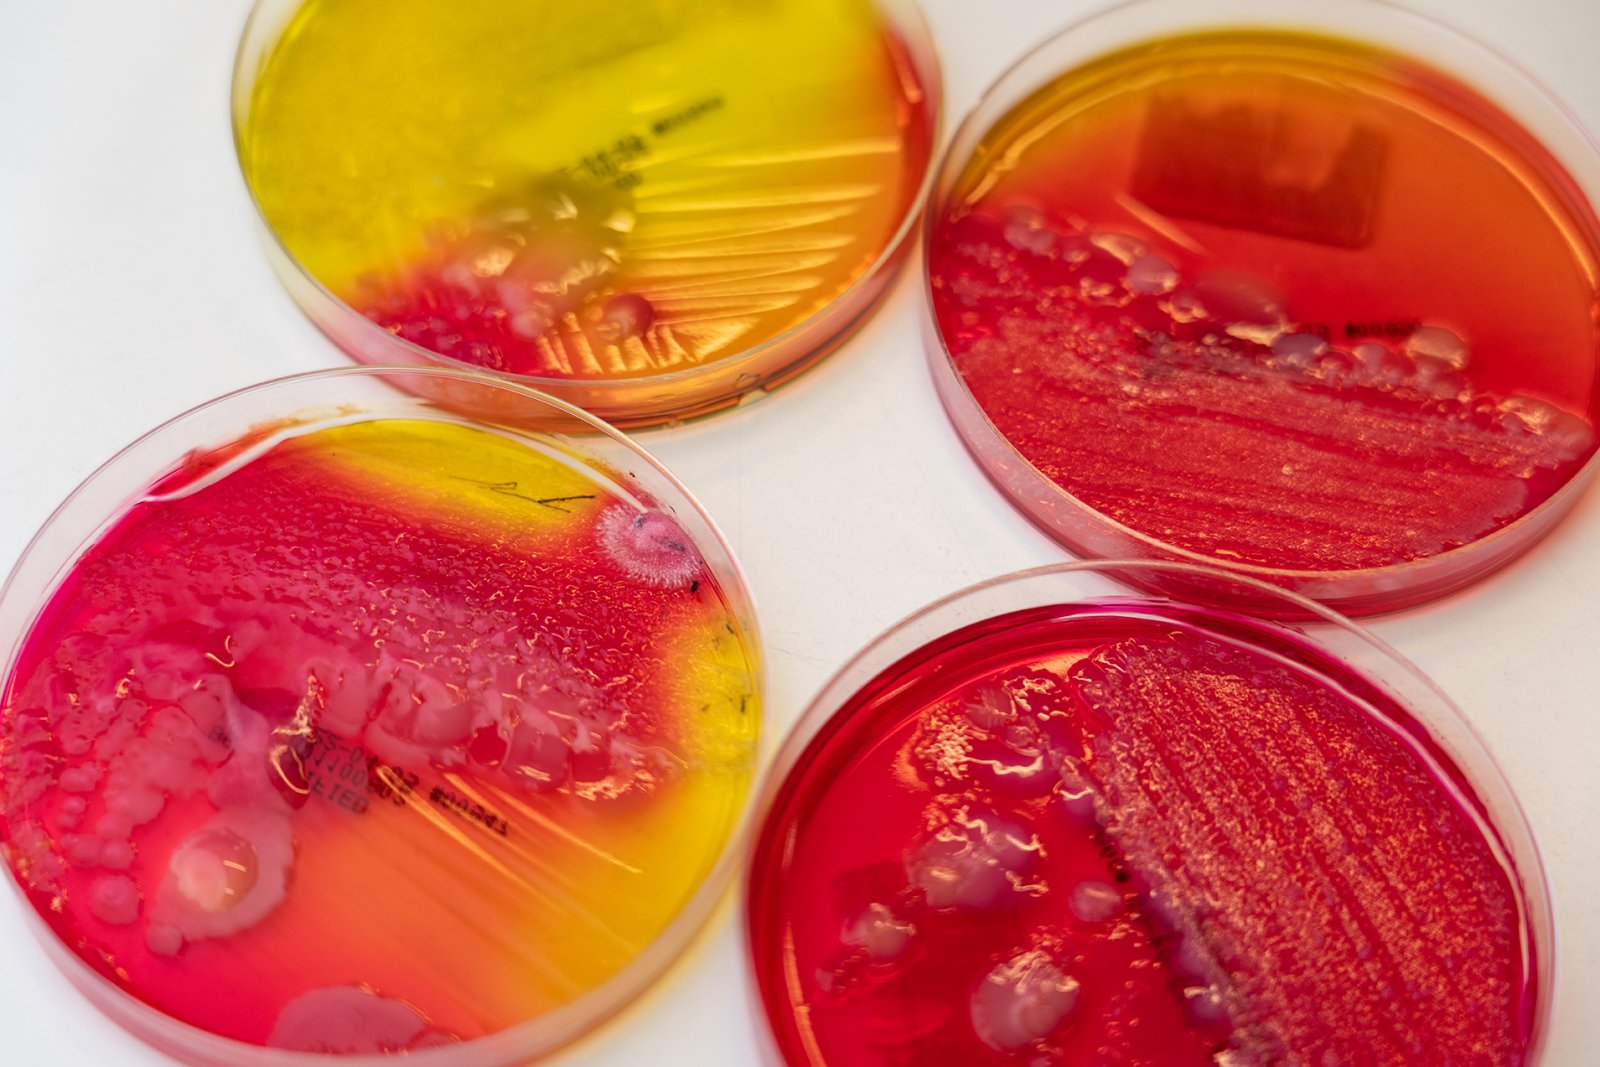 een voedingsbodem die een kleurindicator heeft voor zuurvorming en daarmee Salmonella kan aantonen